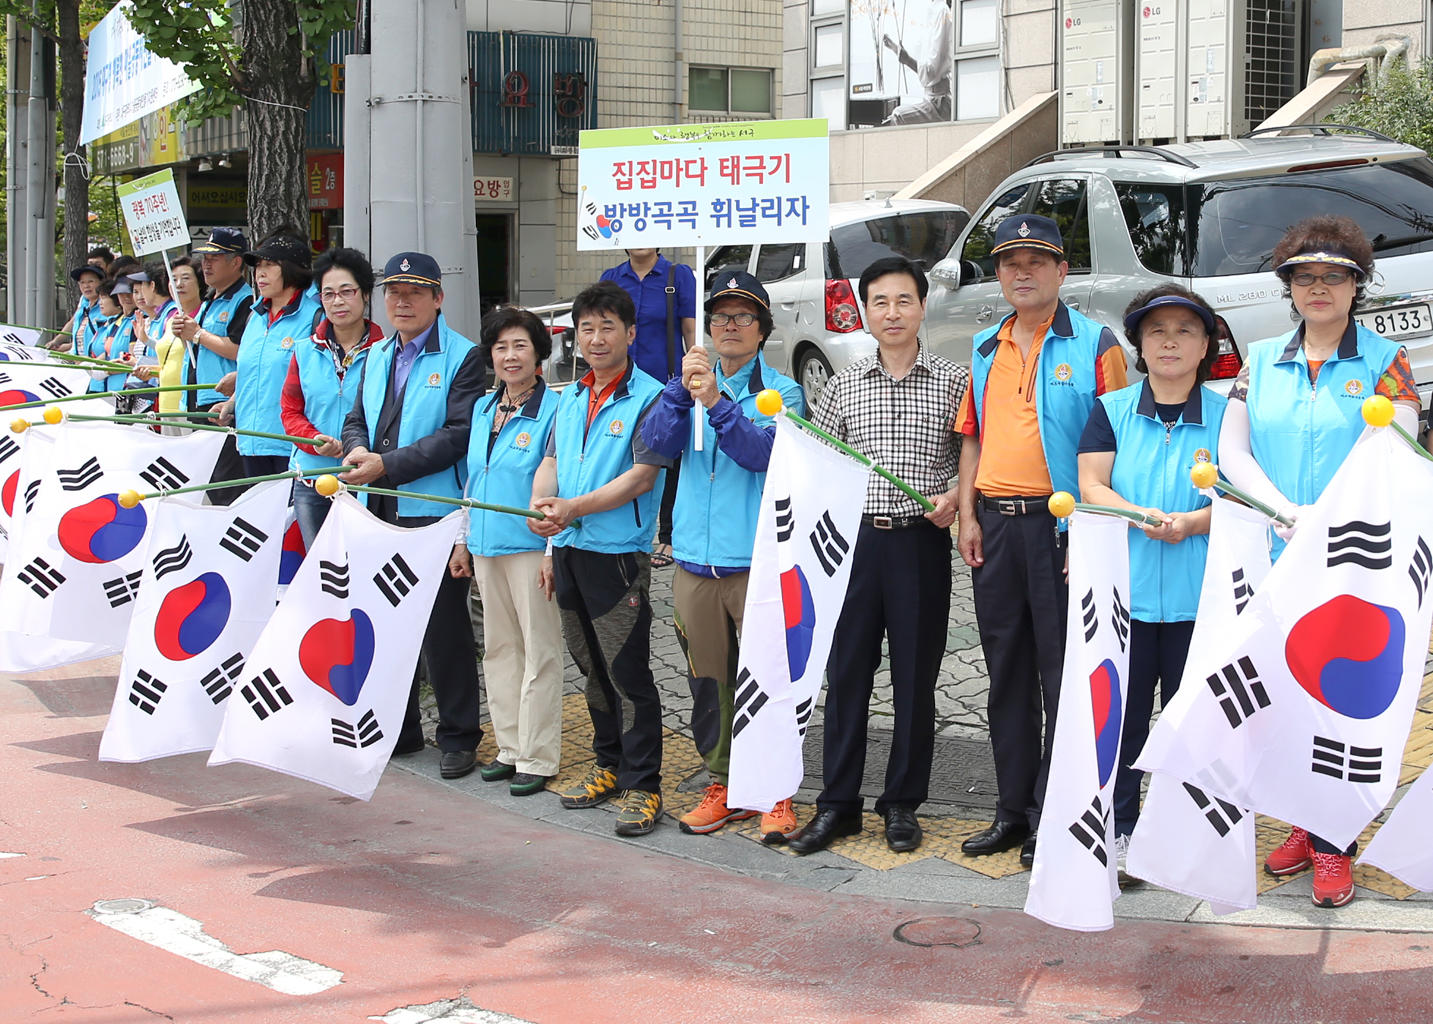 전국 동시 태극기 달기 운동 캠페인 (8.13 신평리네거리) 4